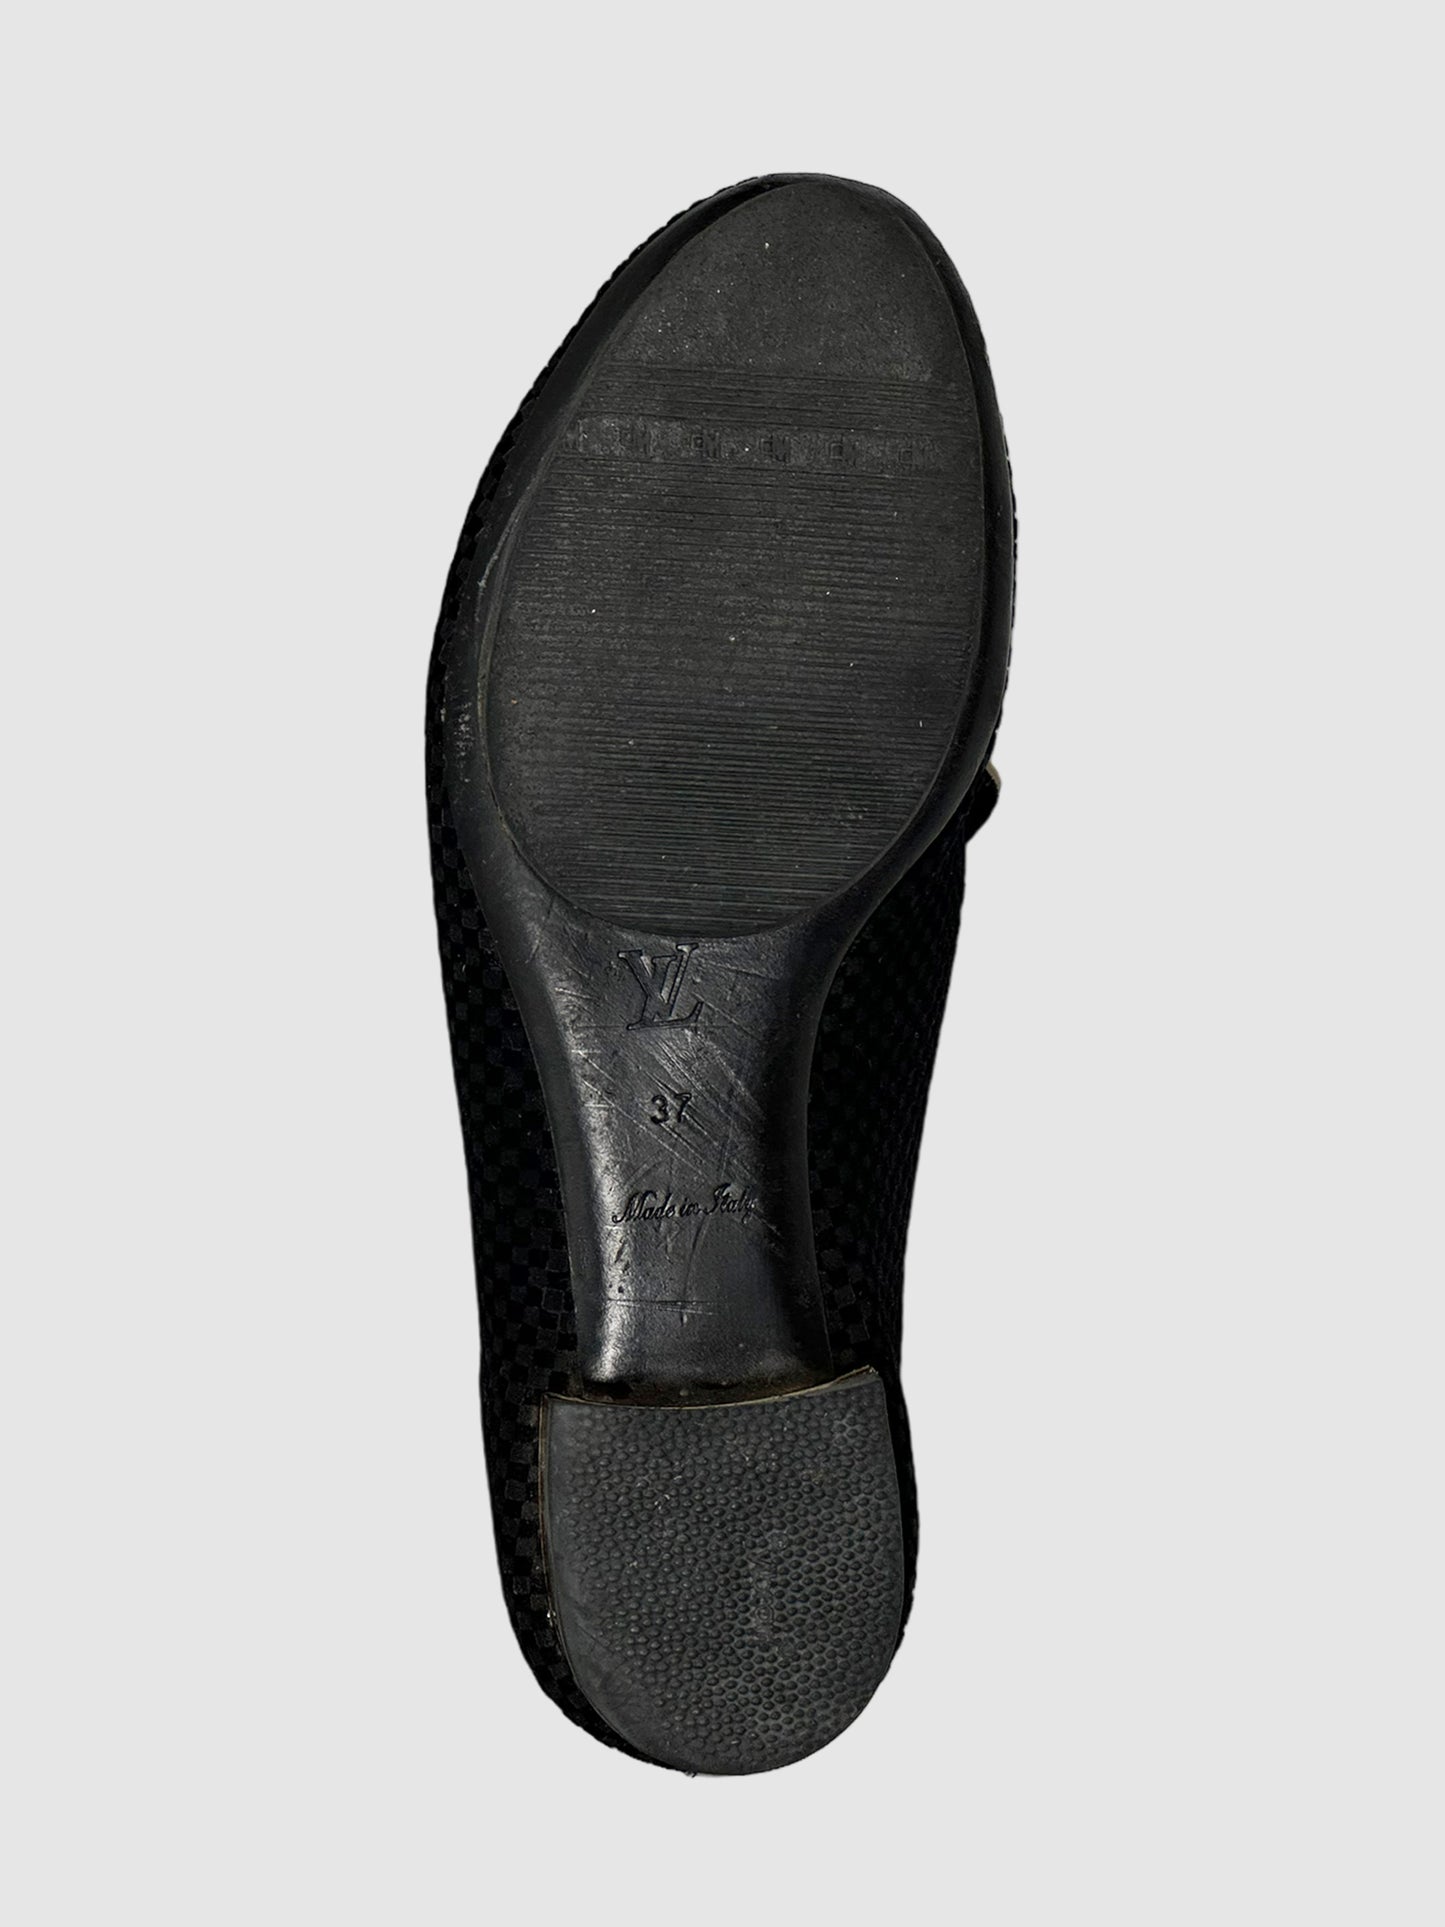 Damier Velvet Loafers - Size 37